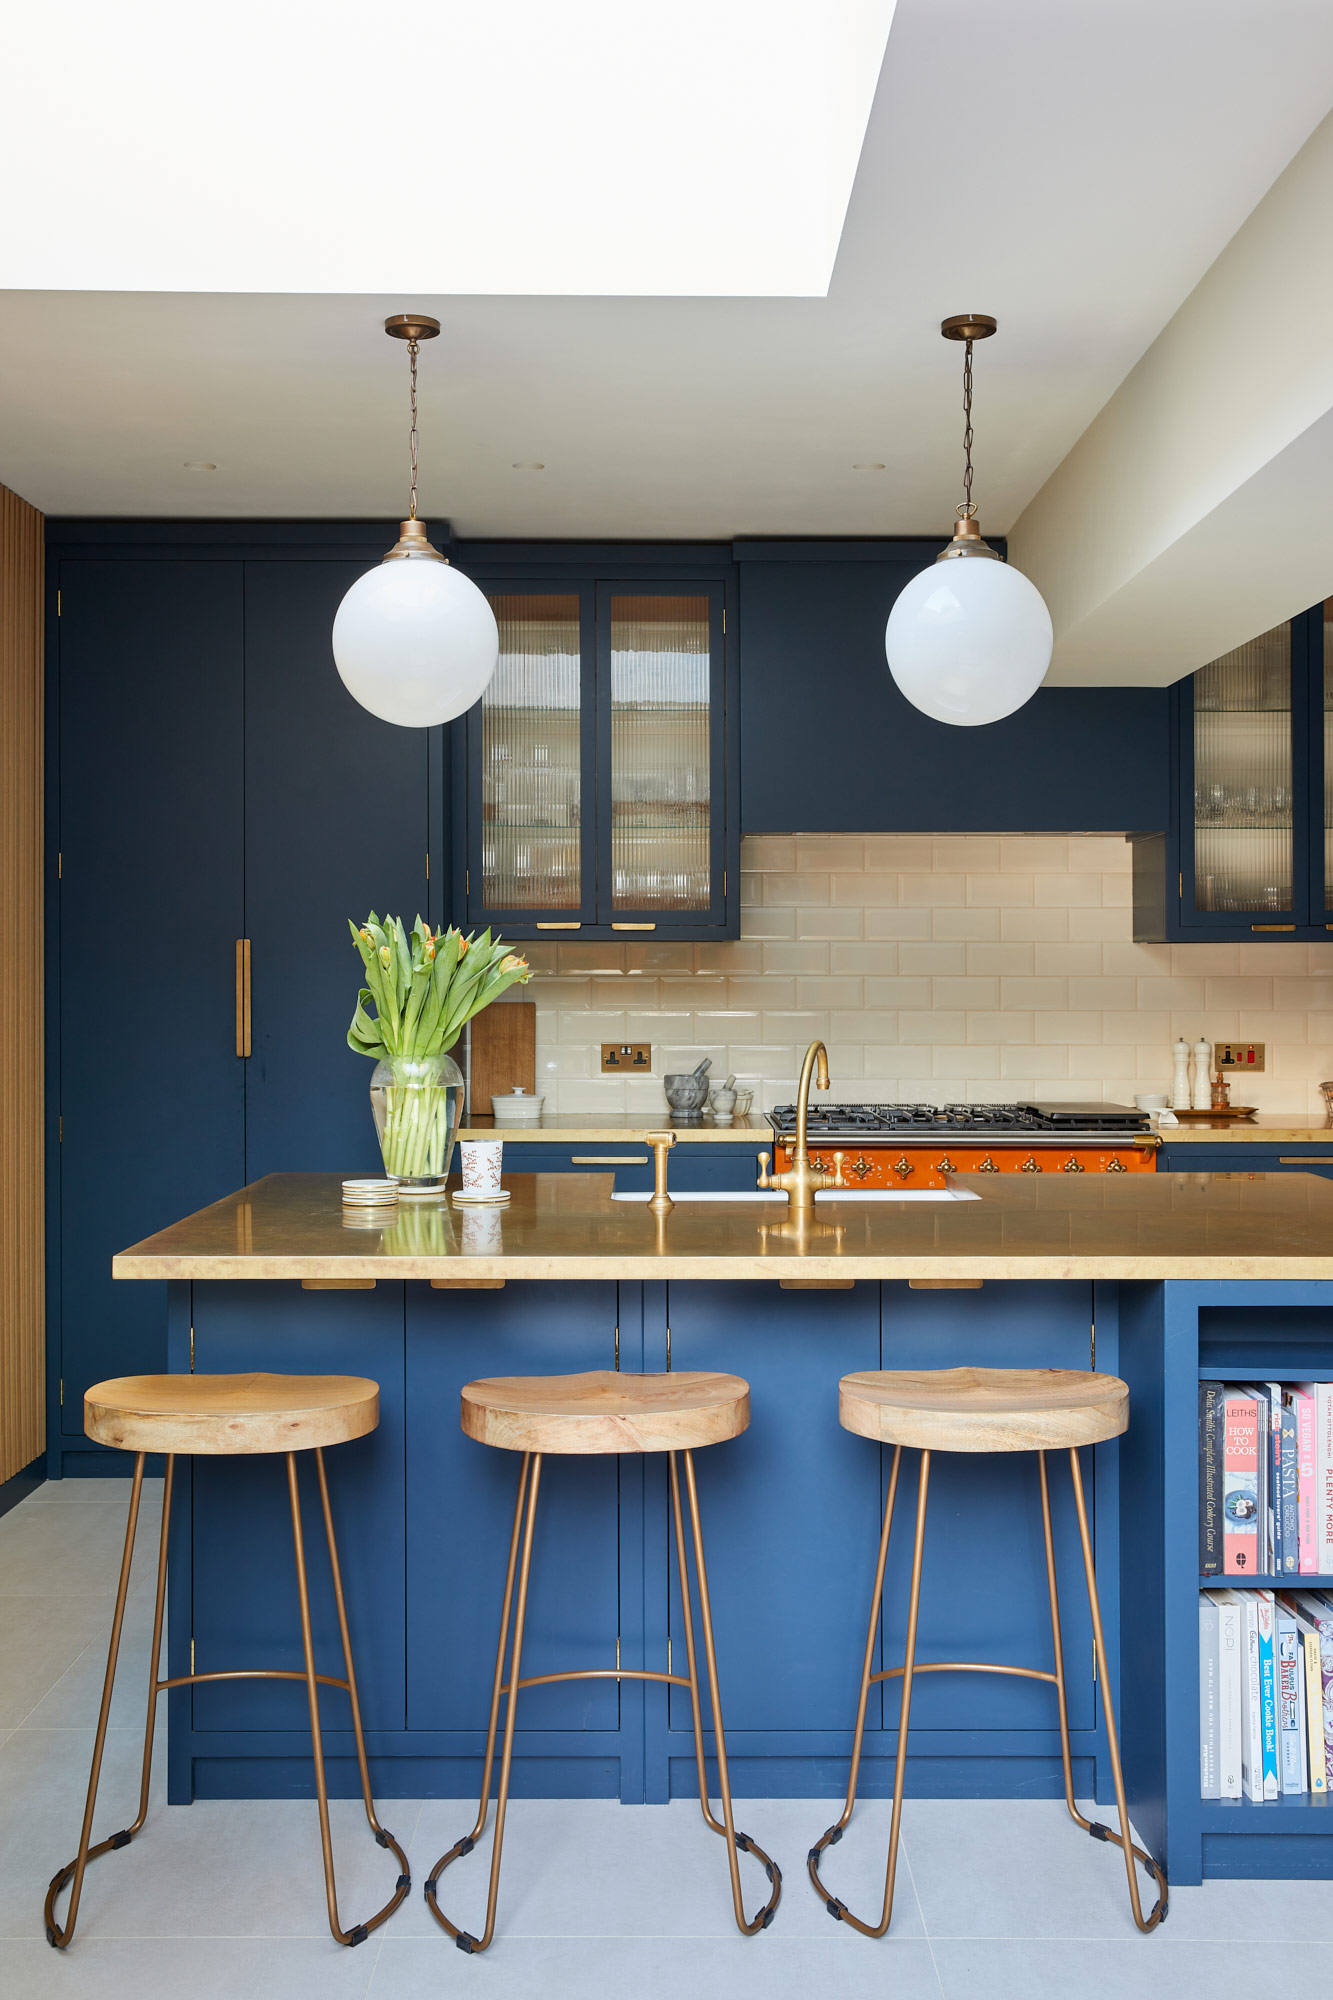 Nordic Oak stools in bespoke blue kitchen